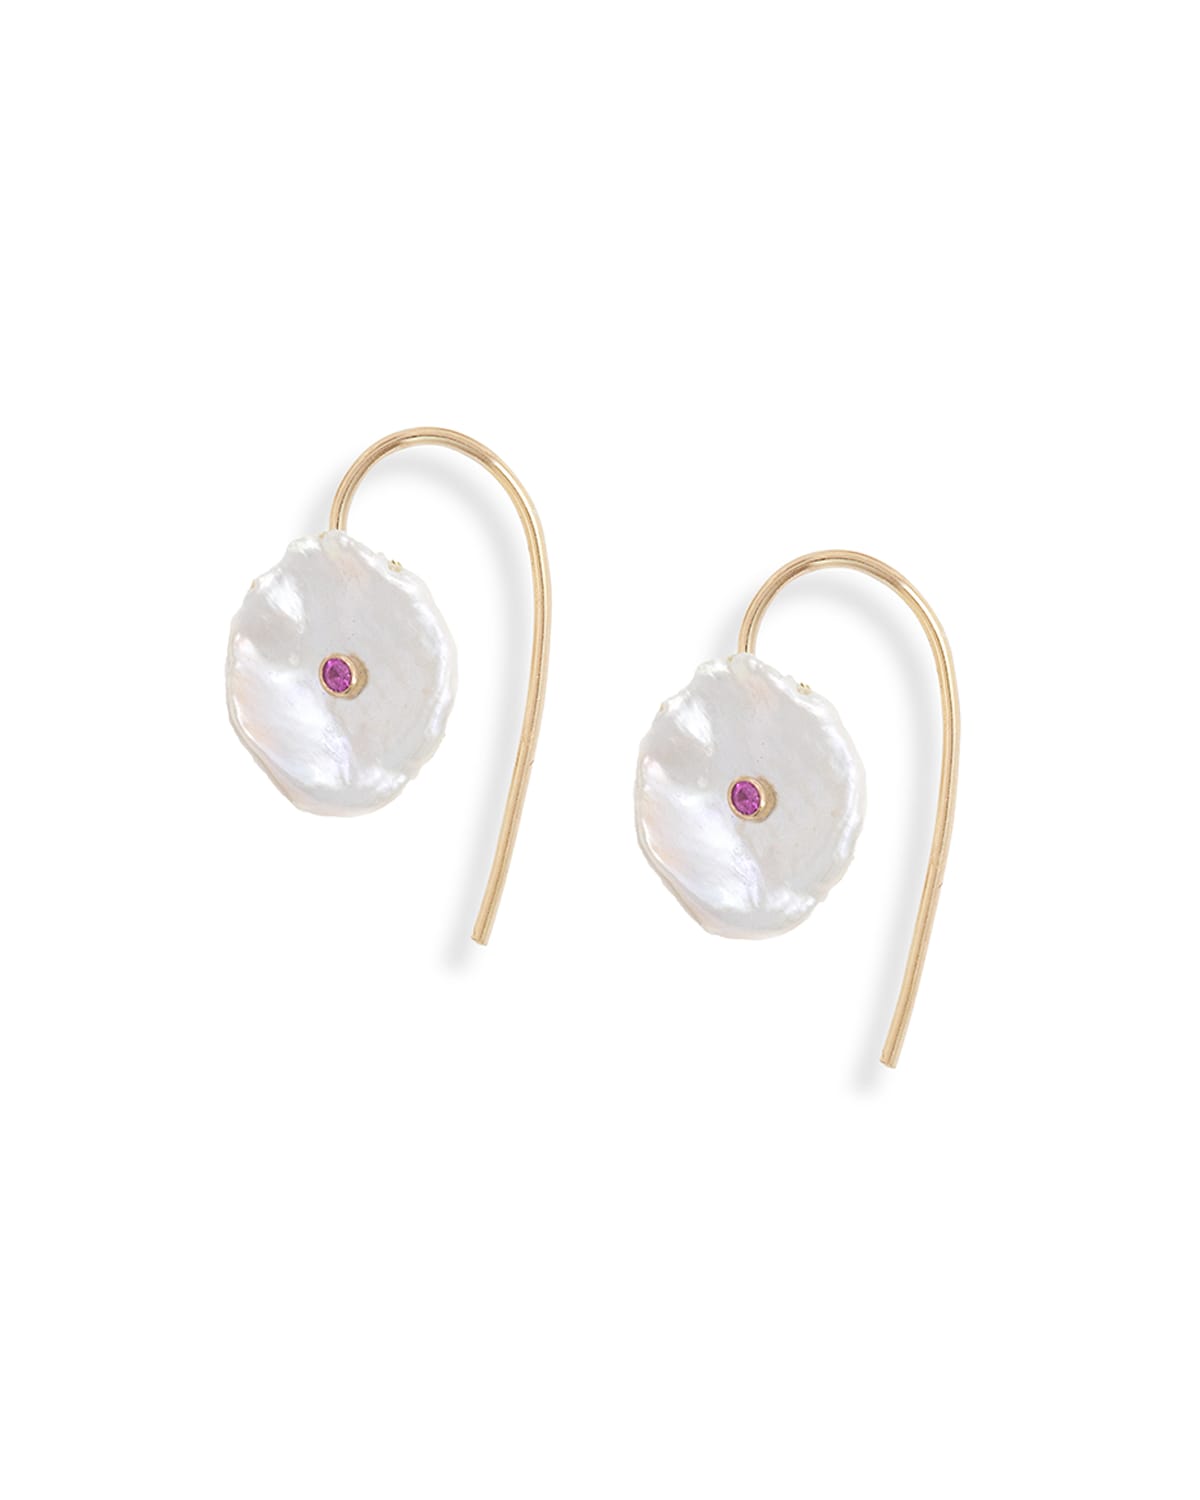 Poppy Finch 14k Gold Petal Pearl & Pink Sapphire Drop Earrings